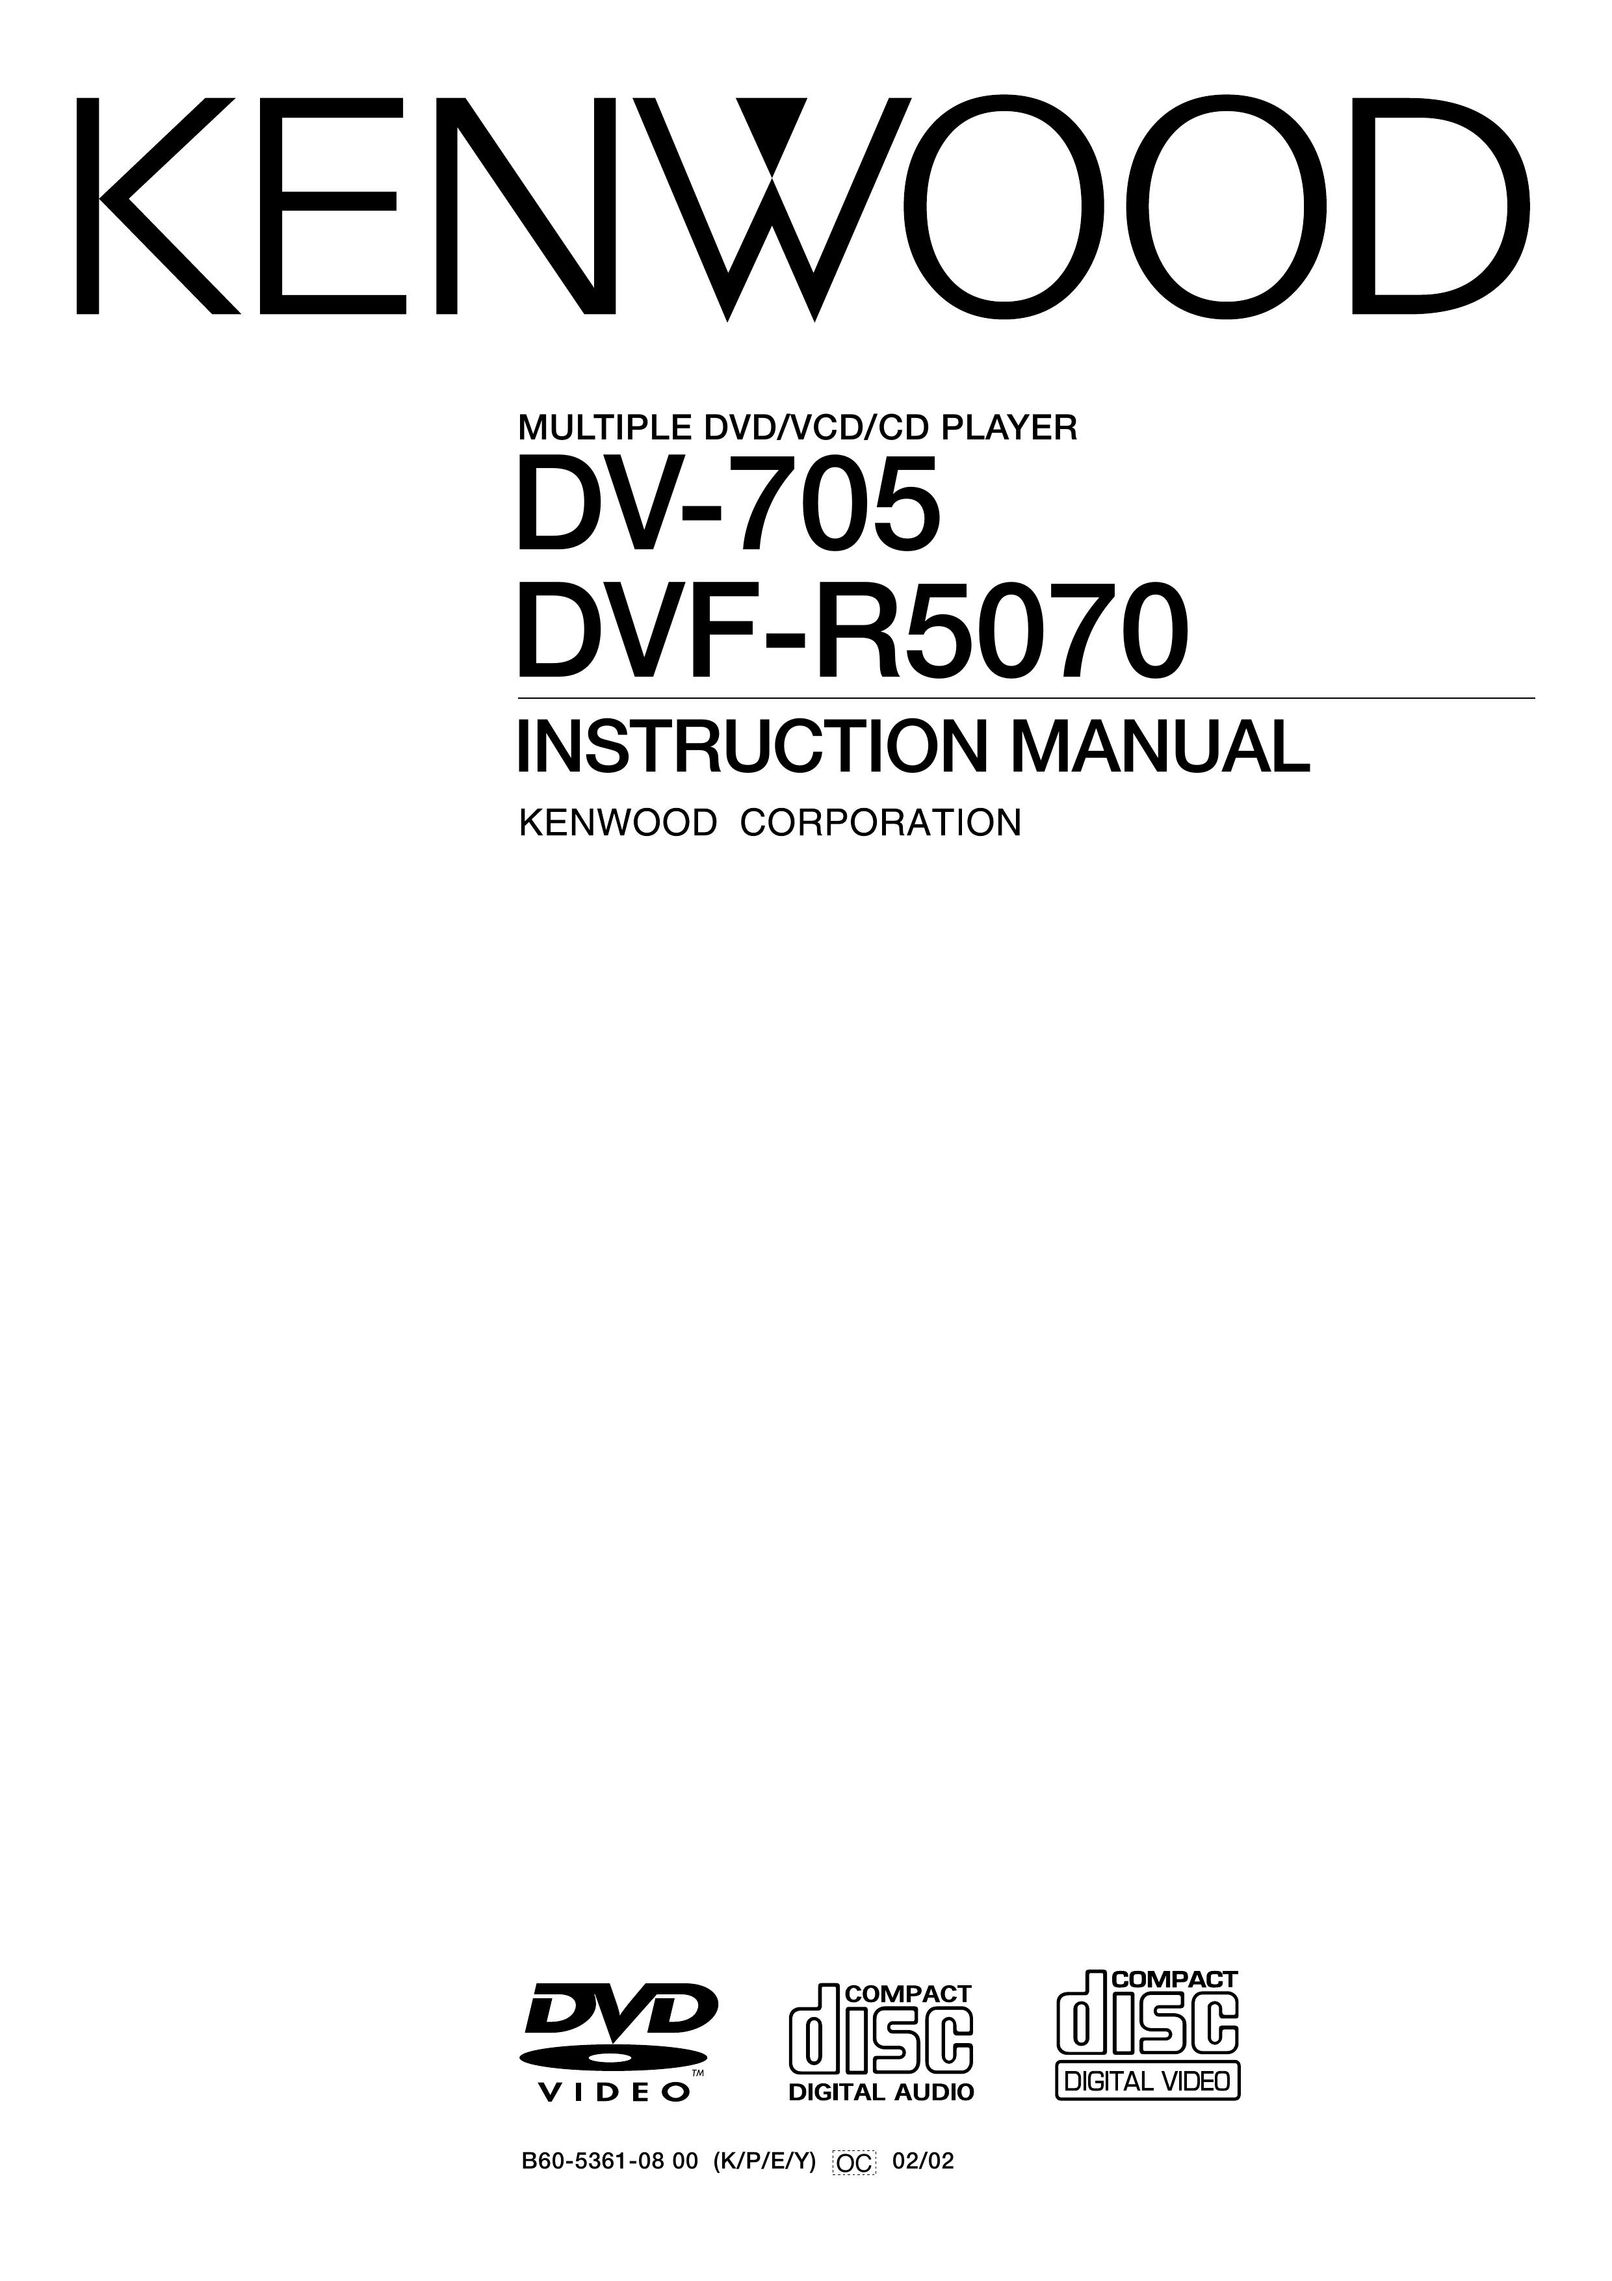 Kenwood DV-705 DVD Player User Manual